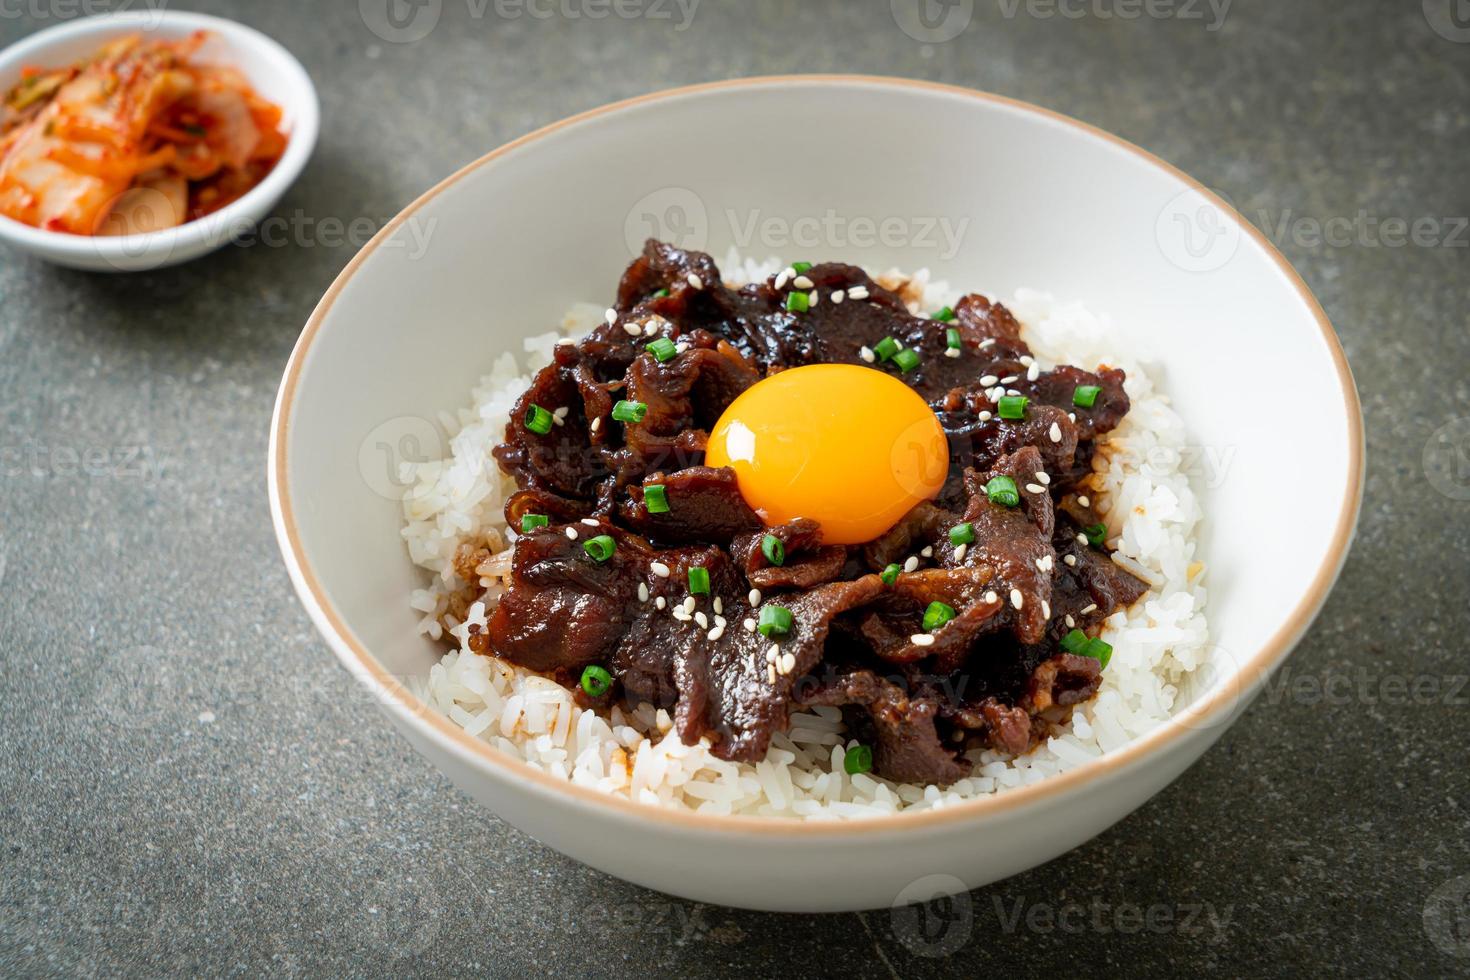 arroz com carne de porco com sabor de soja ou donburi de porco japonês foto